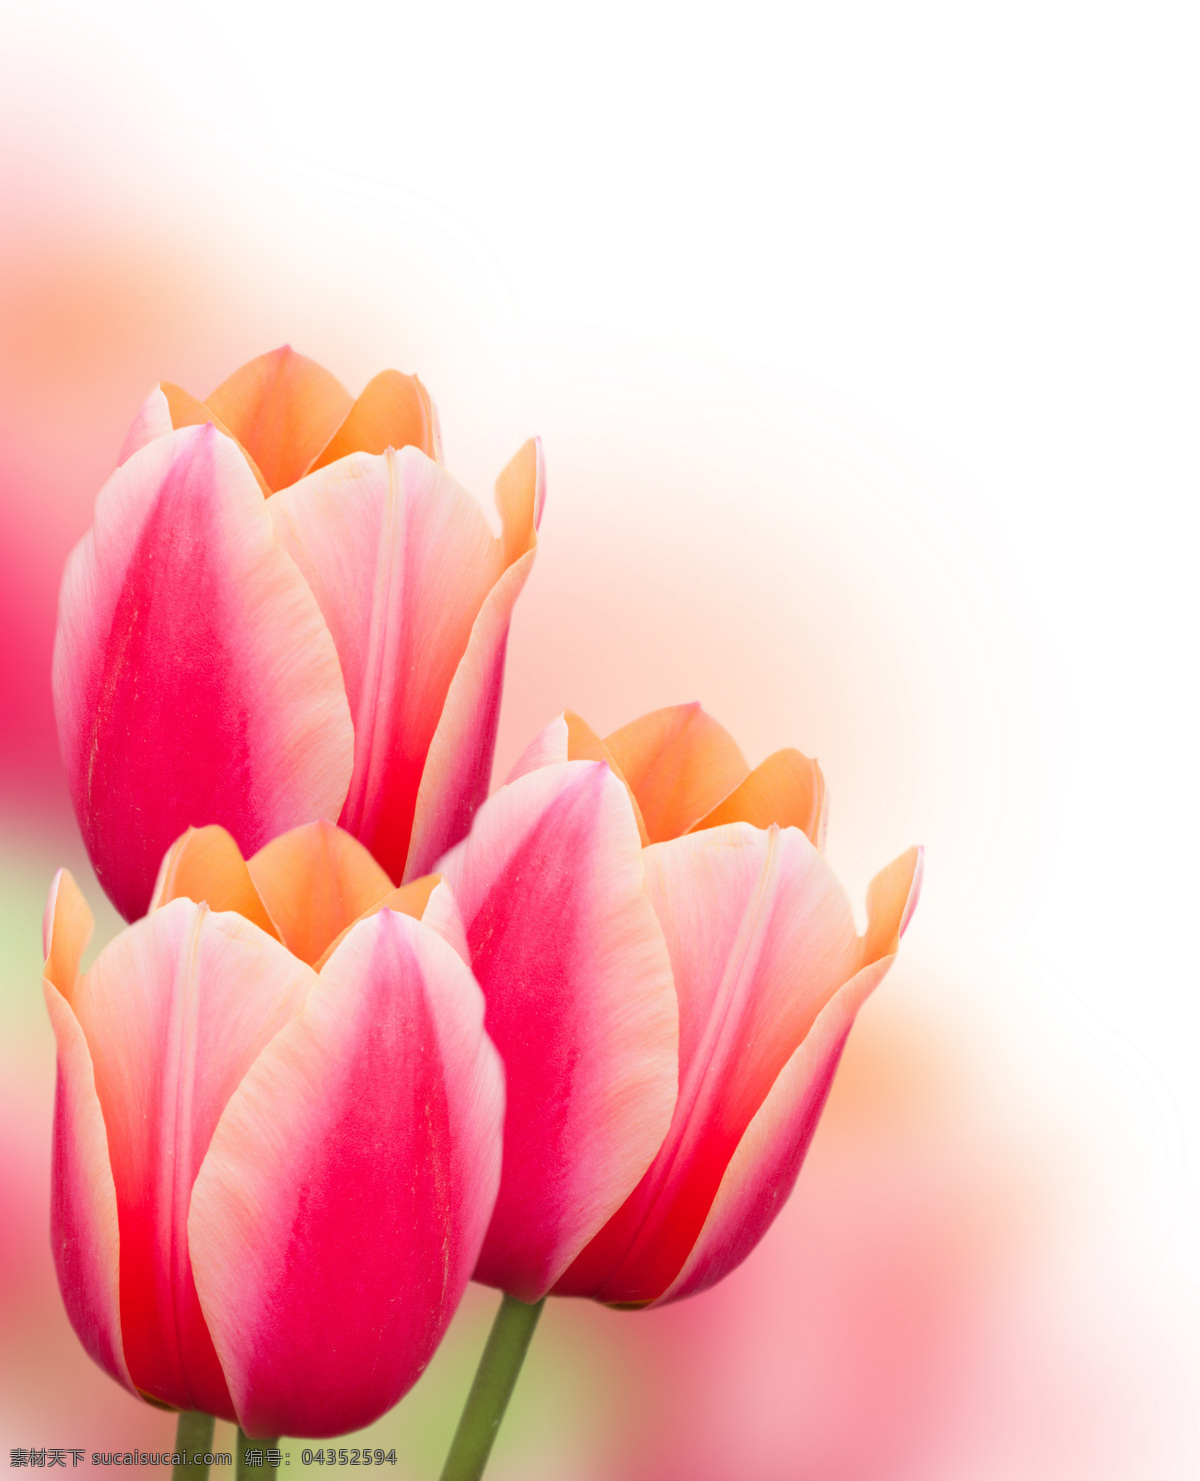 郁金香 植物 鲜花 近照 唯美 浪漫 美丽的花朵 朦胧 梦幻 意境 粉色 淡雅 花草树木 生物世界